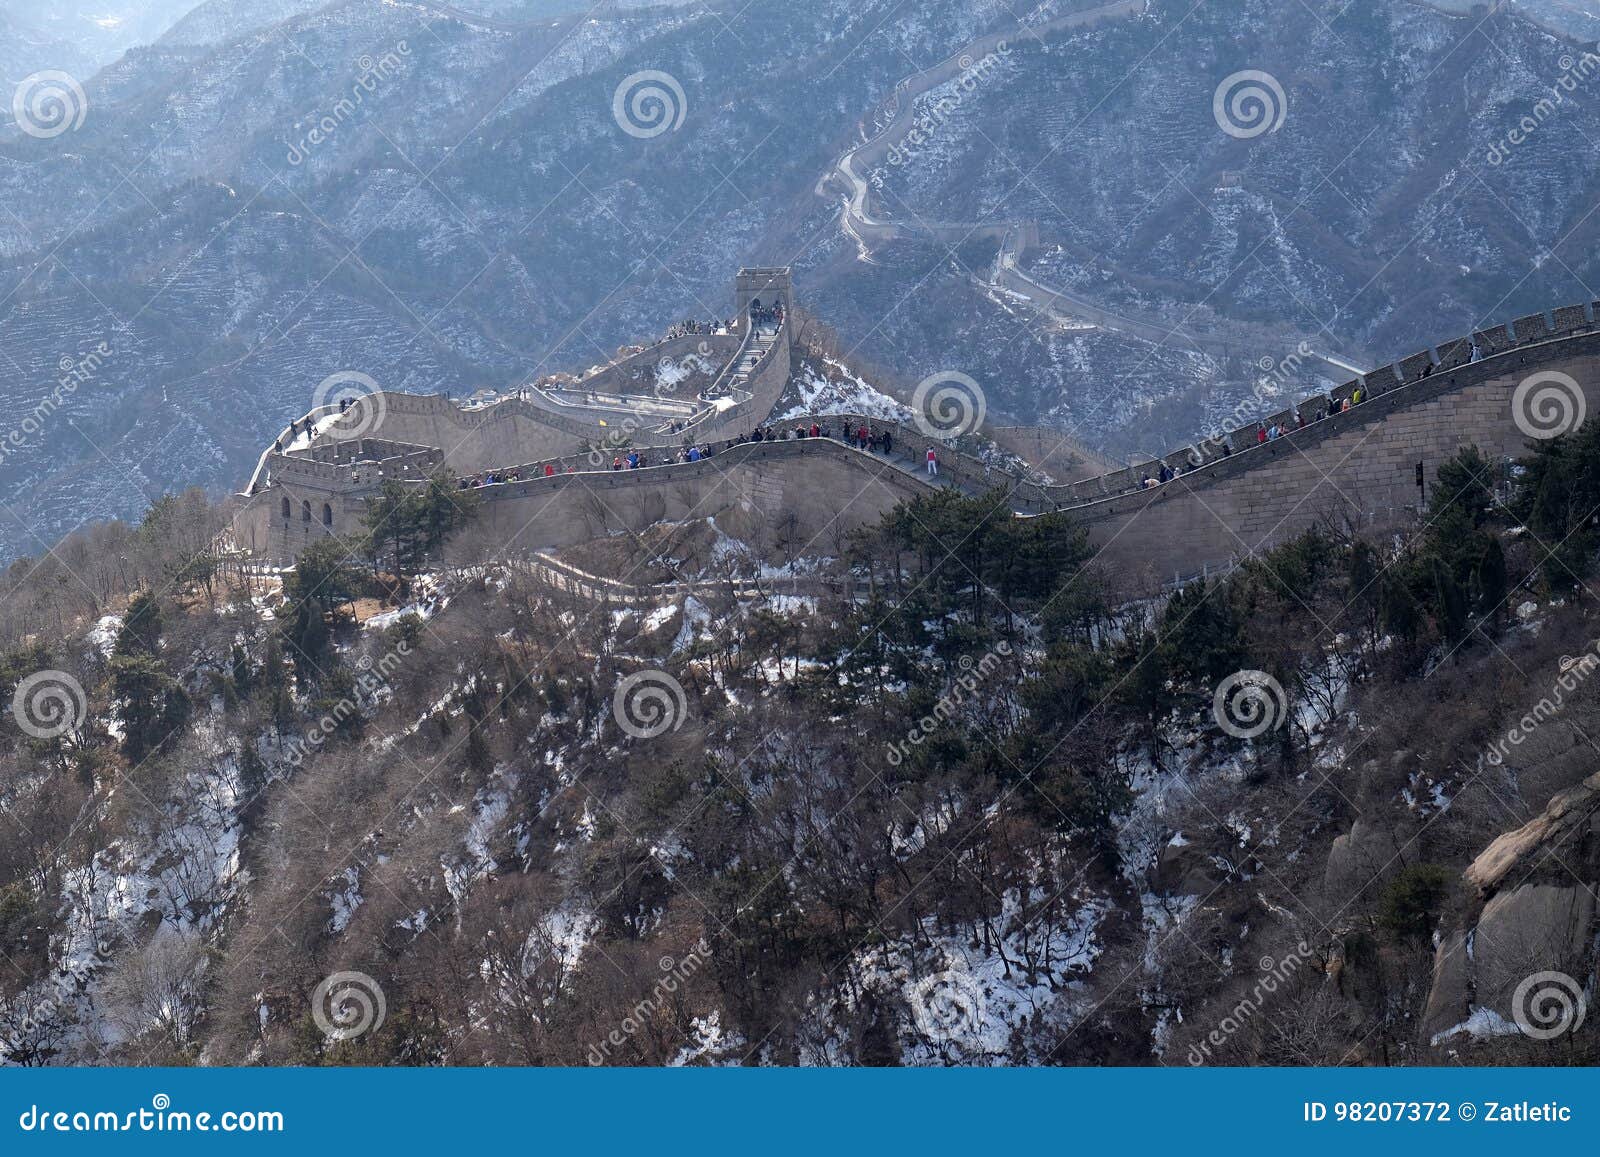 the great wall of china in badaling, china